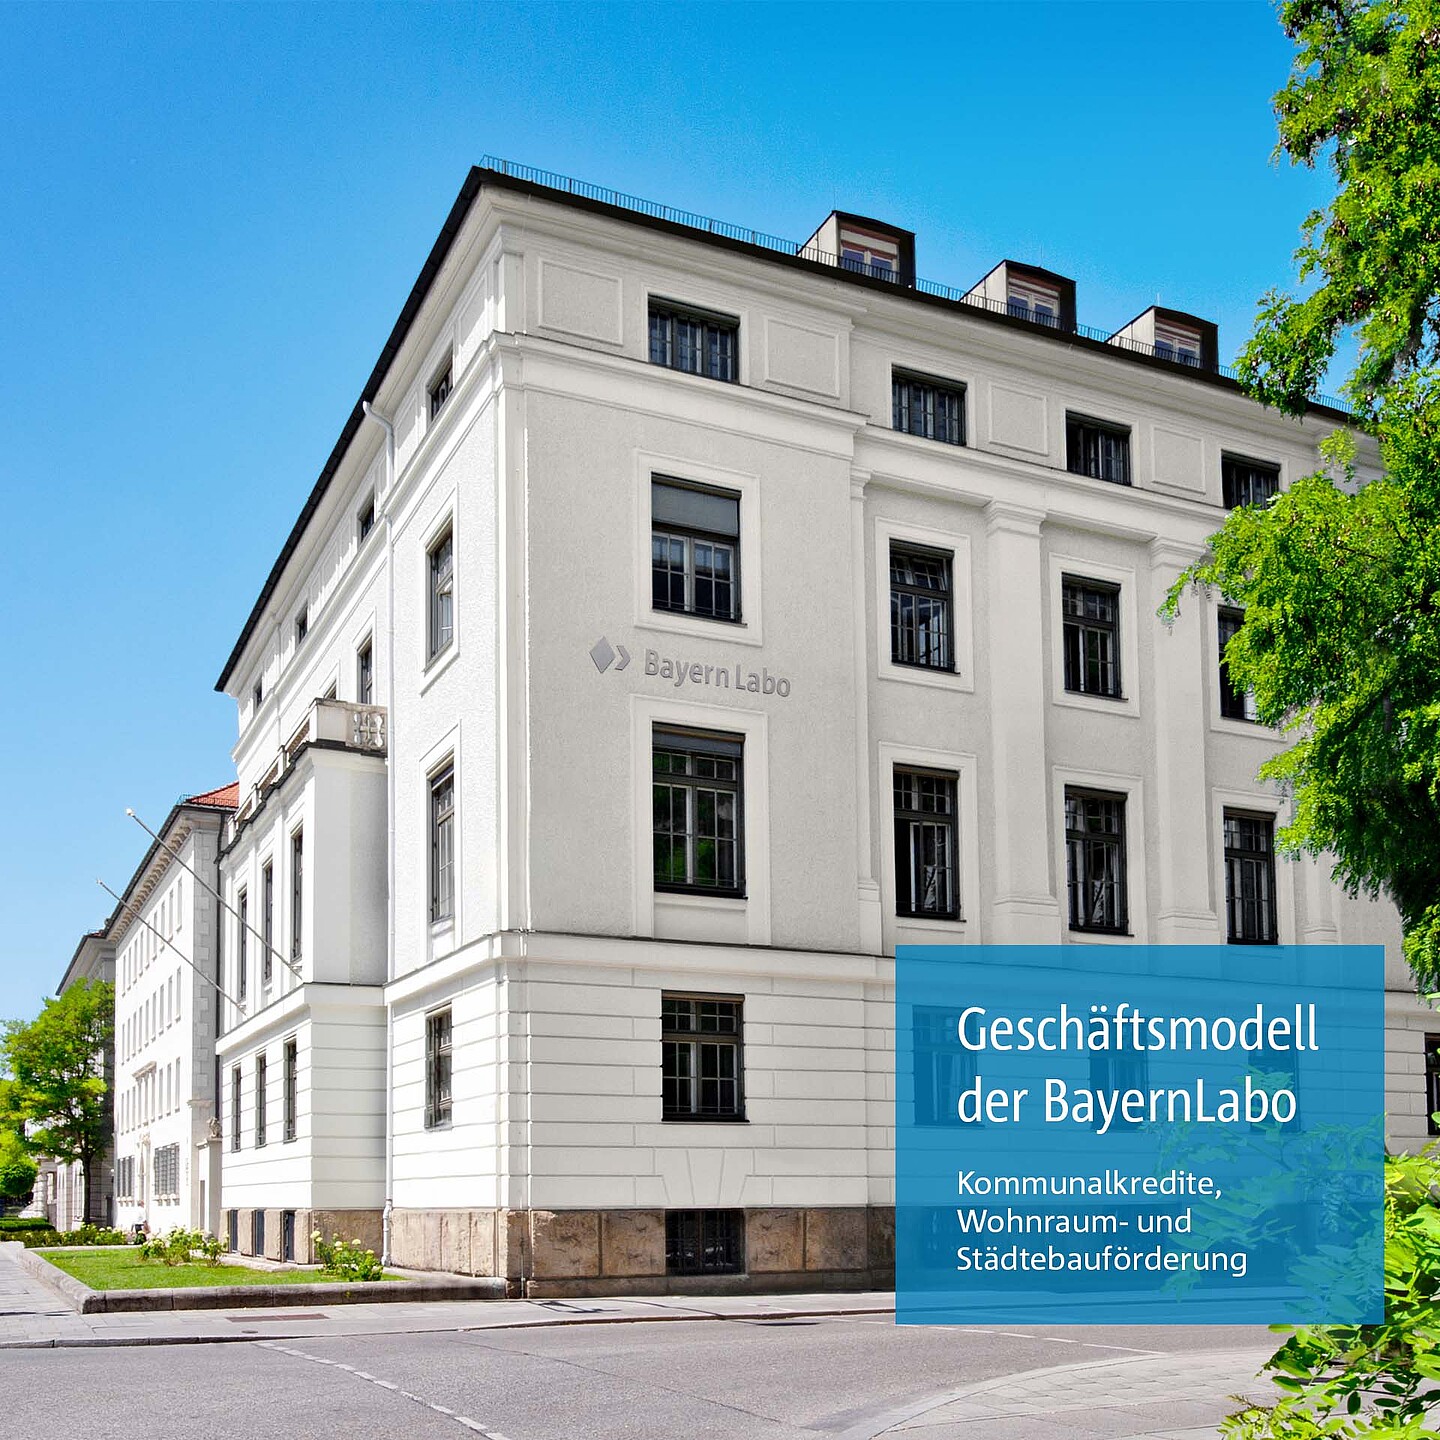 Kommunalkredite, Wohnraum- und Städtebauförderung als Geschäftsmodell der BayernLabo.